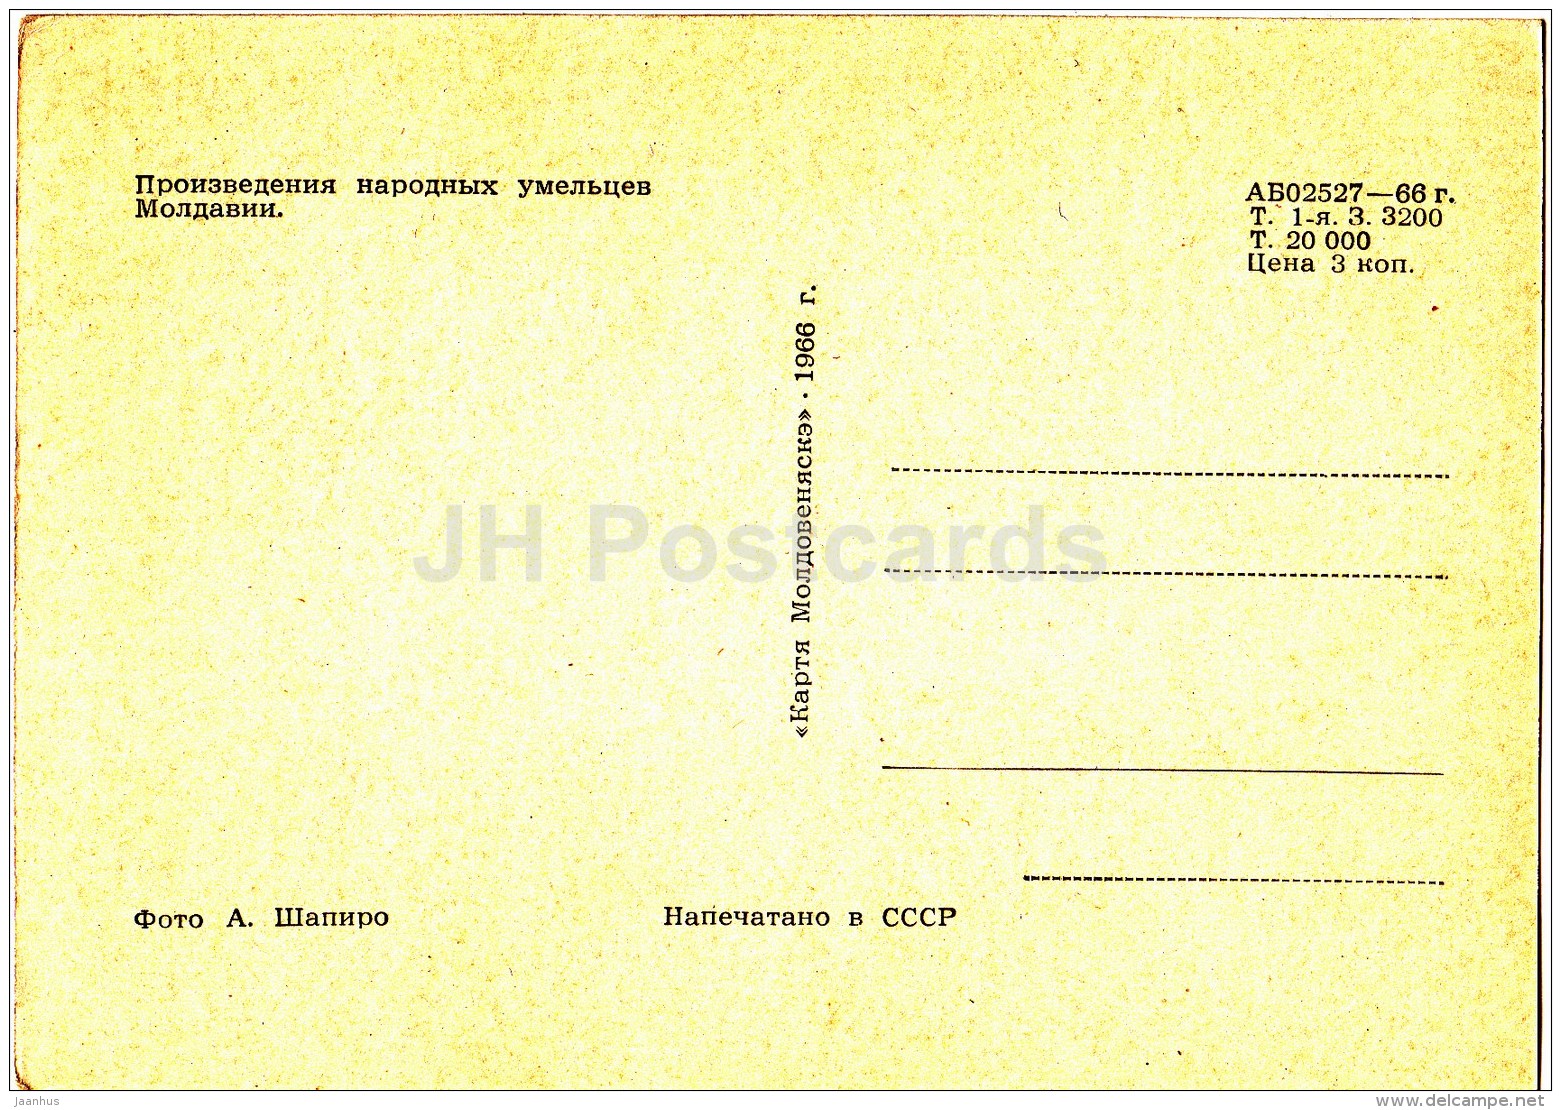 works of folk artists of Moldova - bottle - textile - 1968 - Moldova USSR - unused - JH Postcards